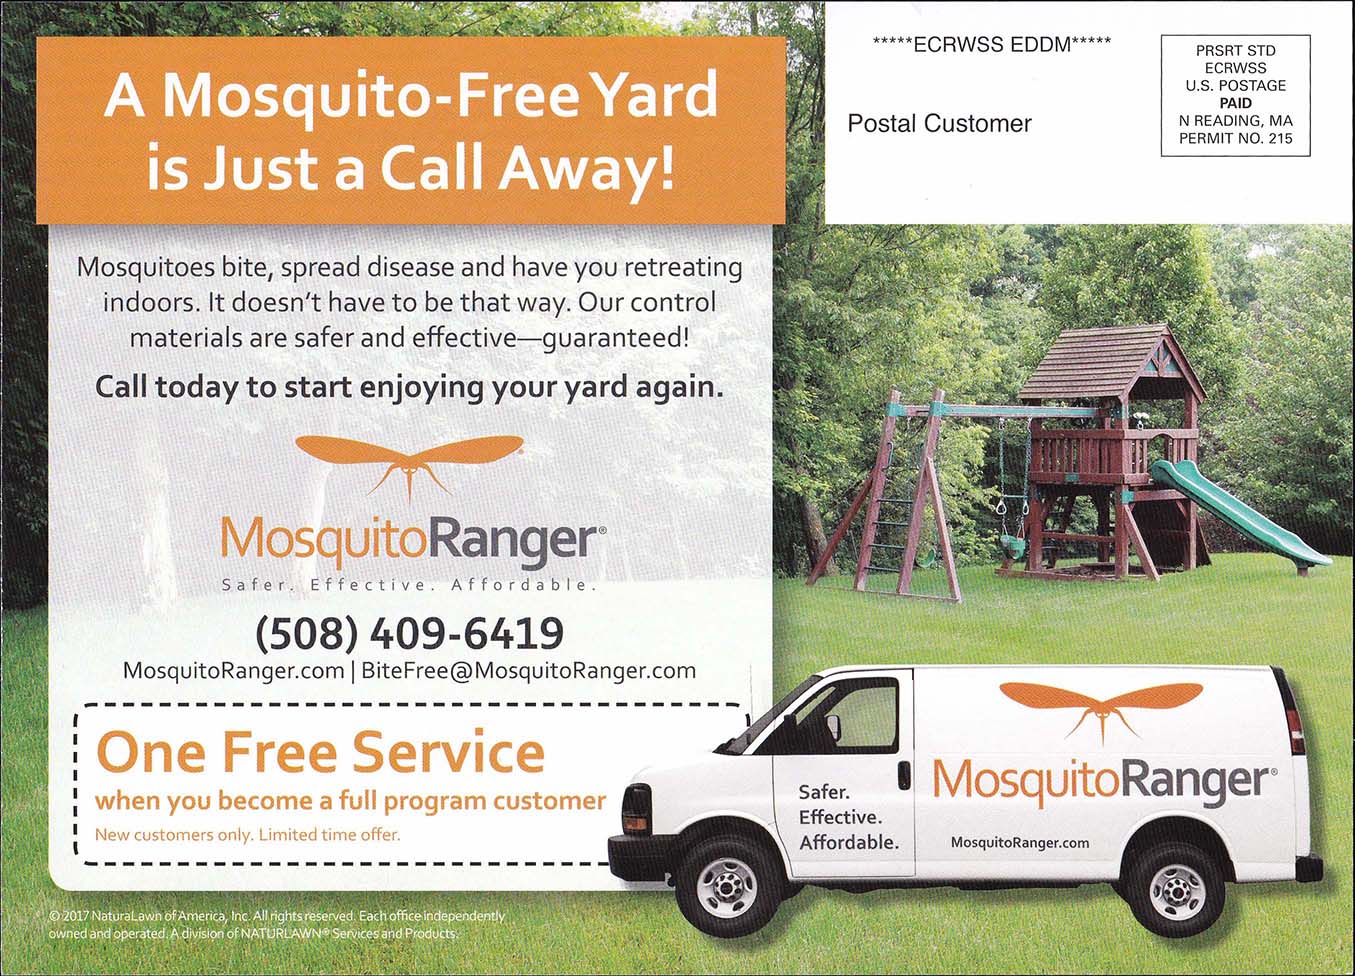 Mosquito Ranger June 15, 2017 - Side 2